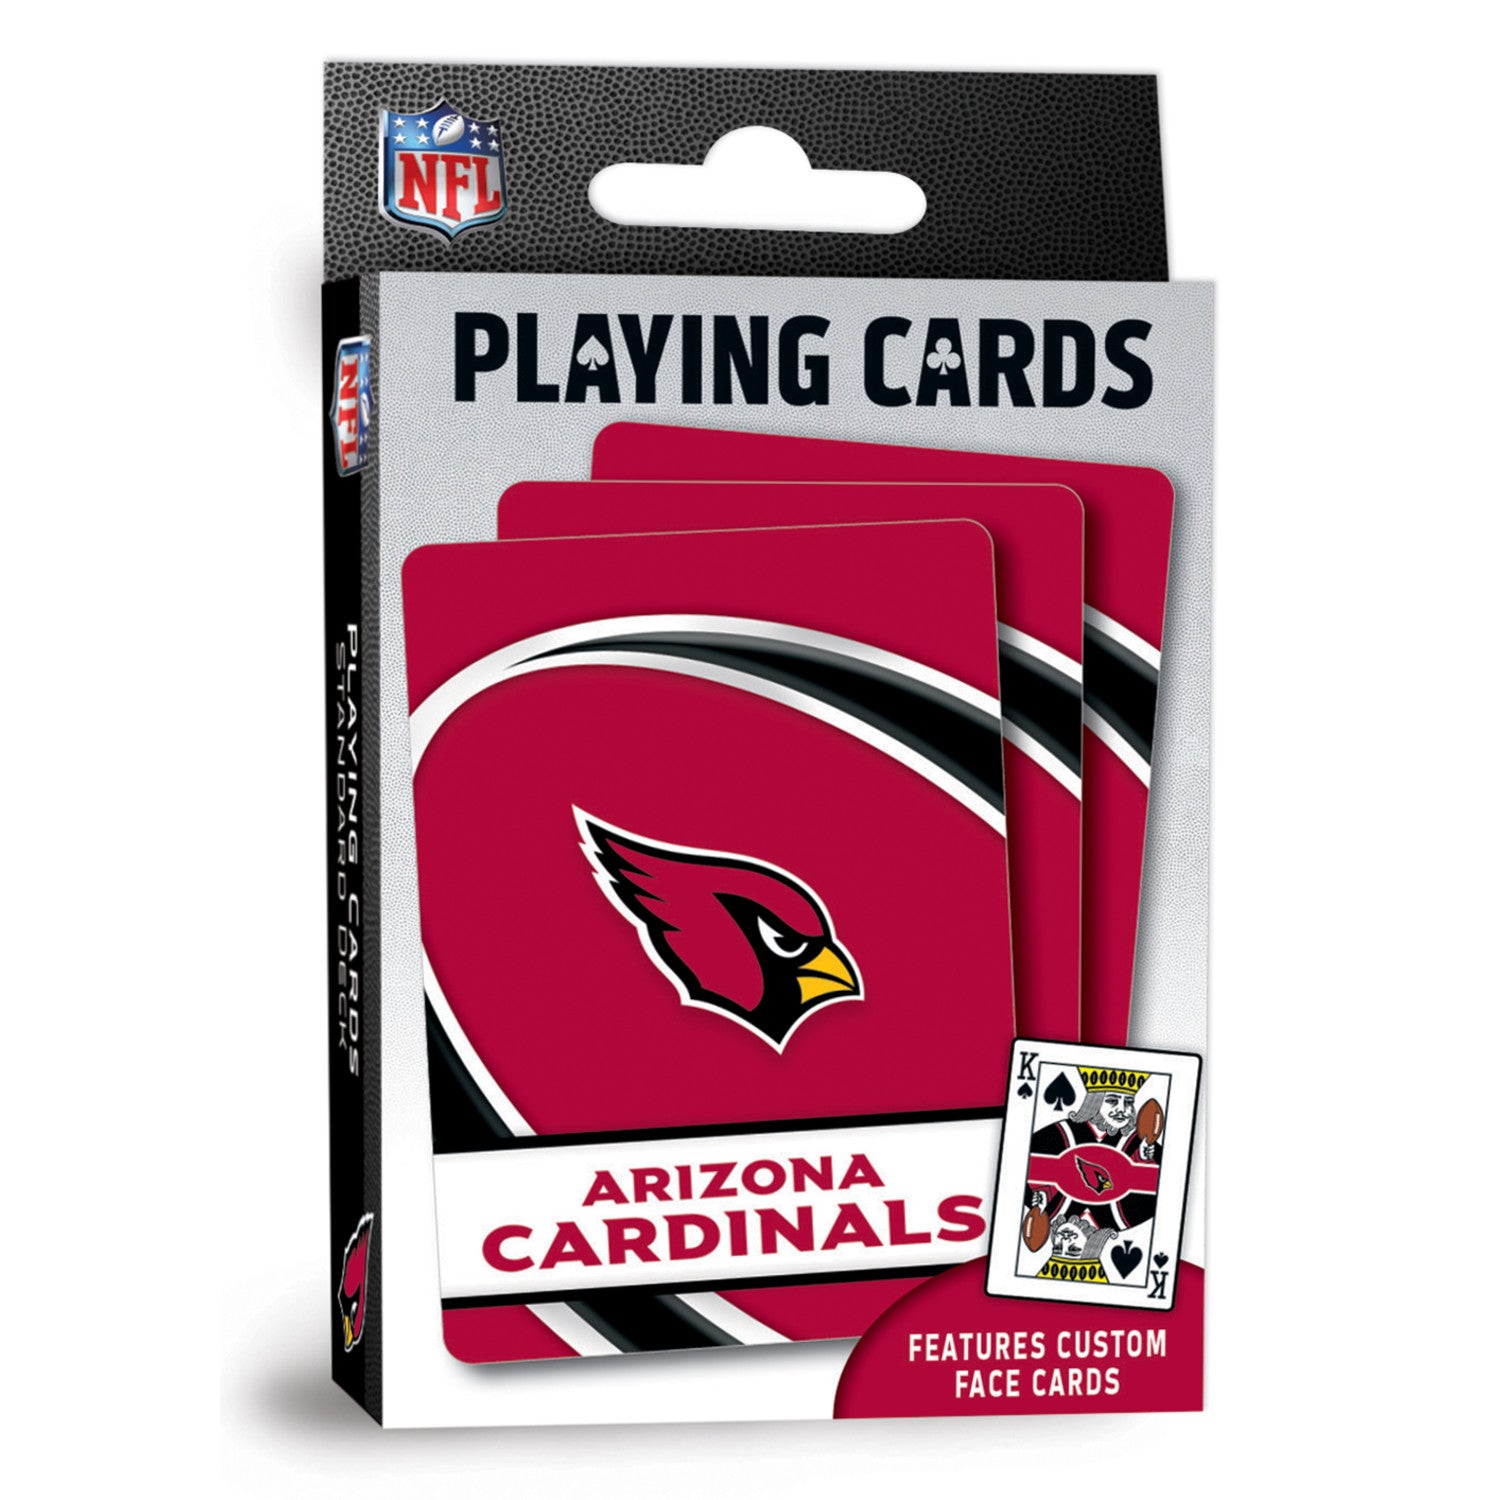 Arizona Cardinals Playing Cards - 54 Card Deck